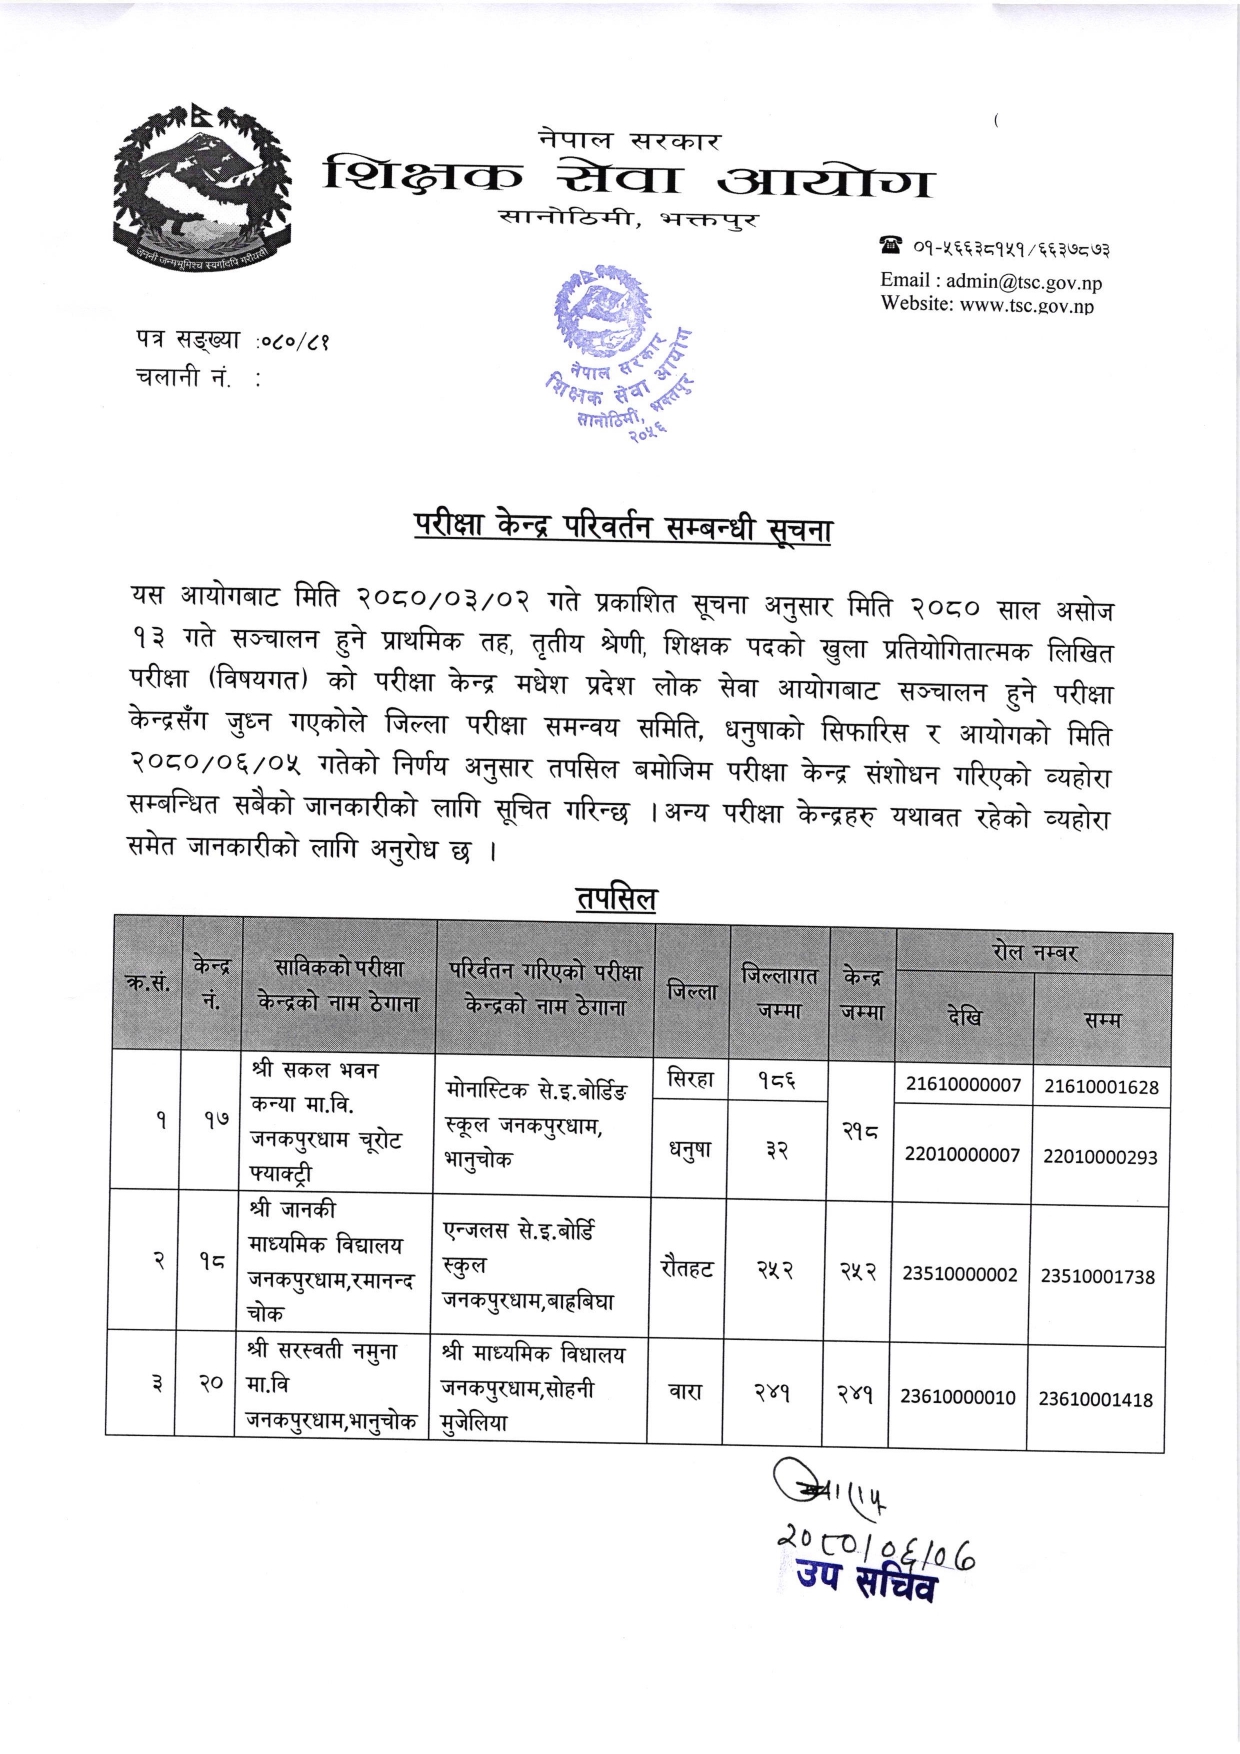 Notice Change of Primary Level Examination Center of Shikshak Sewa Aayog